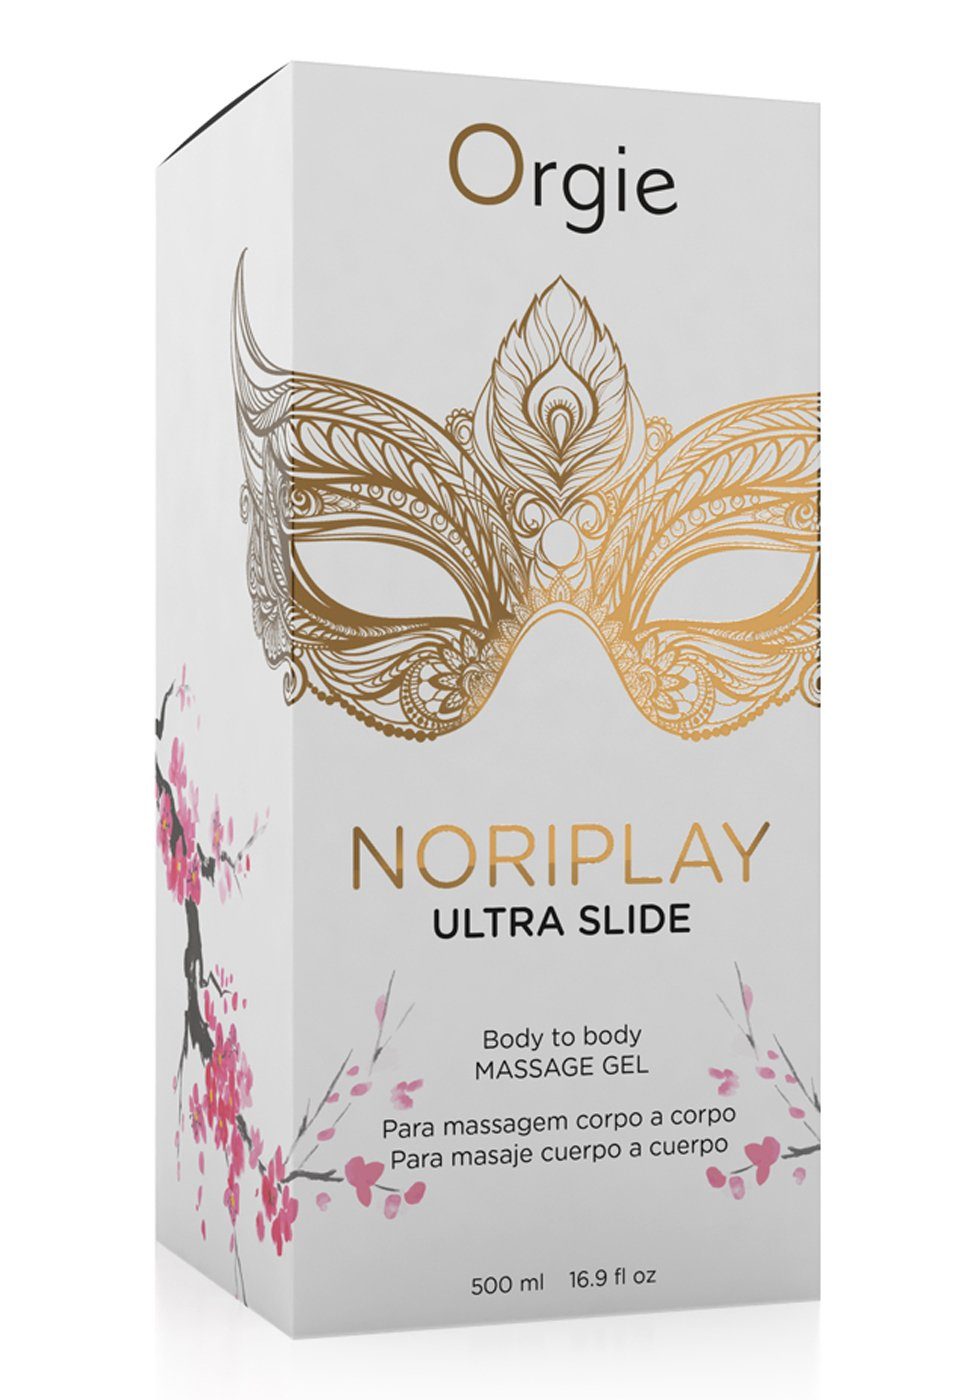 500 Body - ml Massageöl Noriplay Ultra to Body Gel Slide Massage Orgie